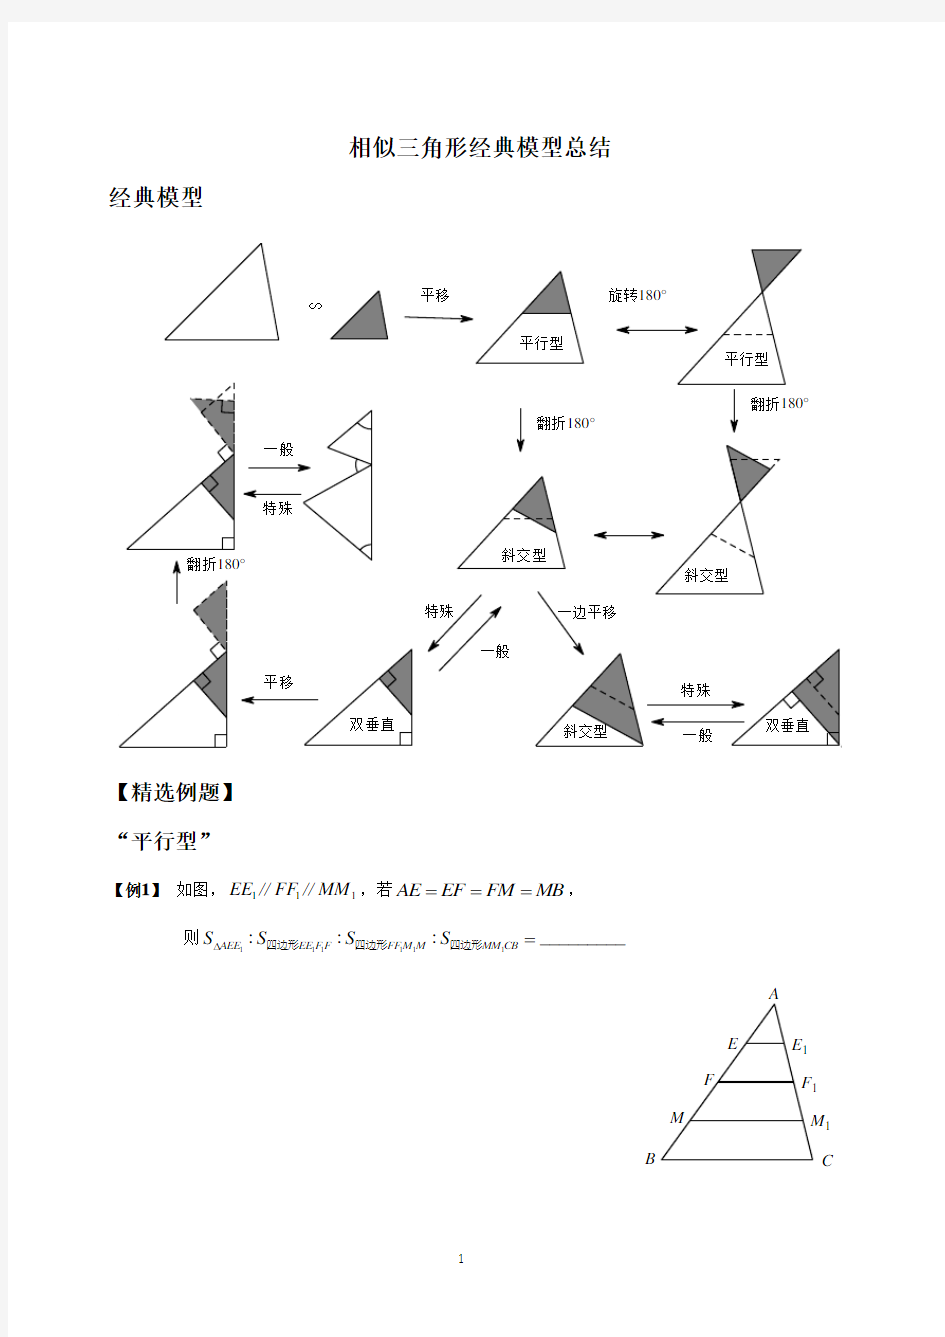 相似三角形_经典模型总结与例题分类[1]